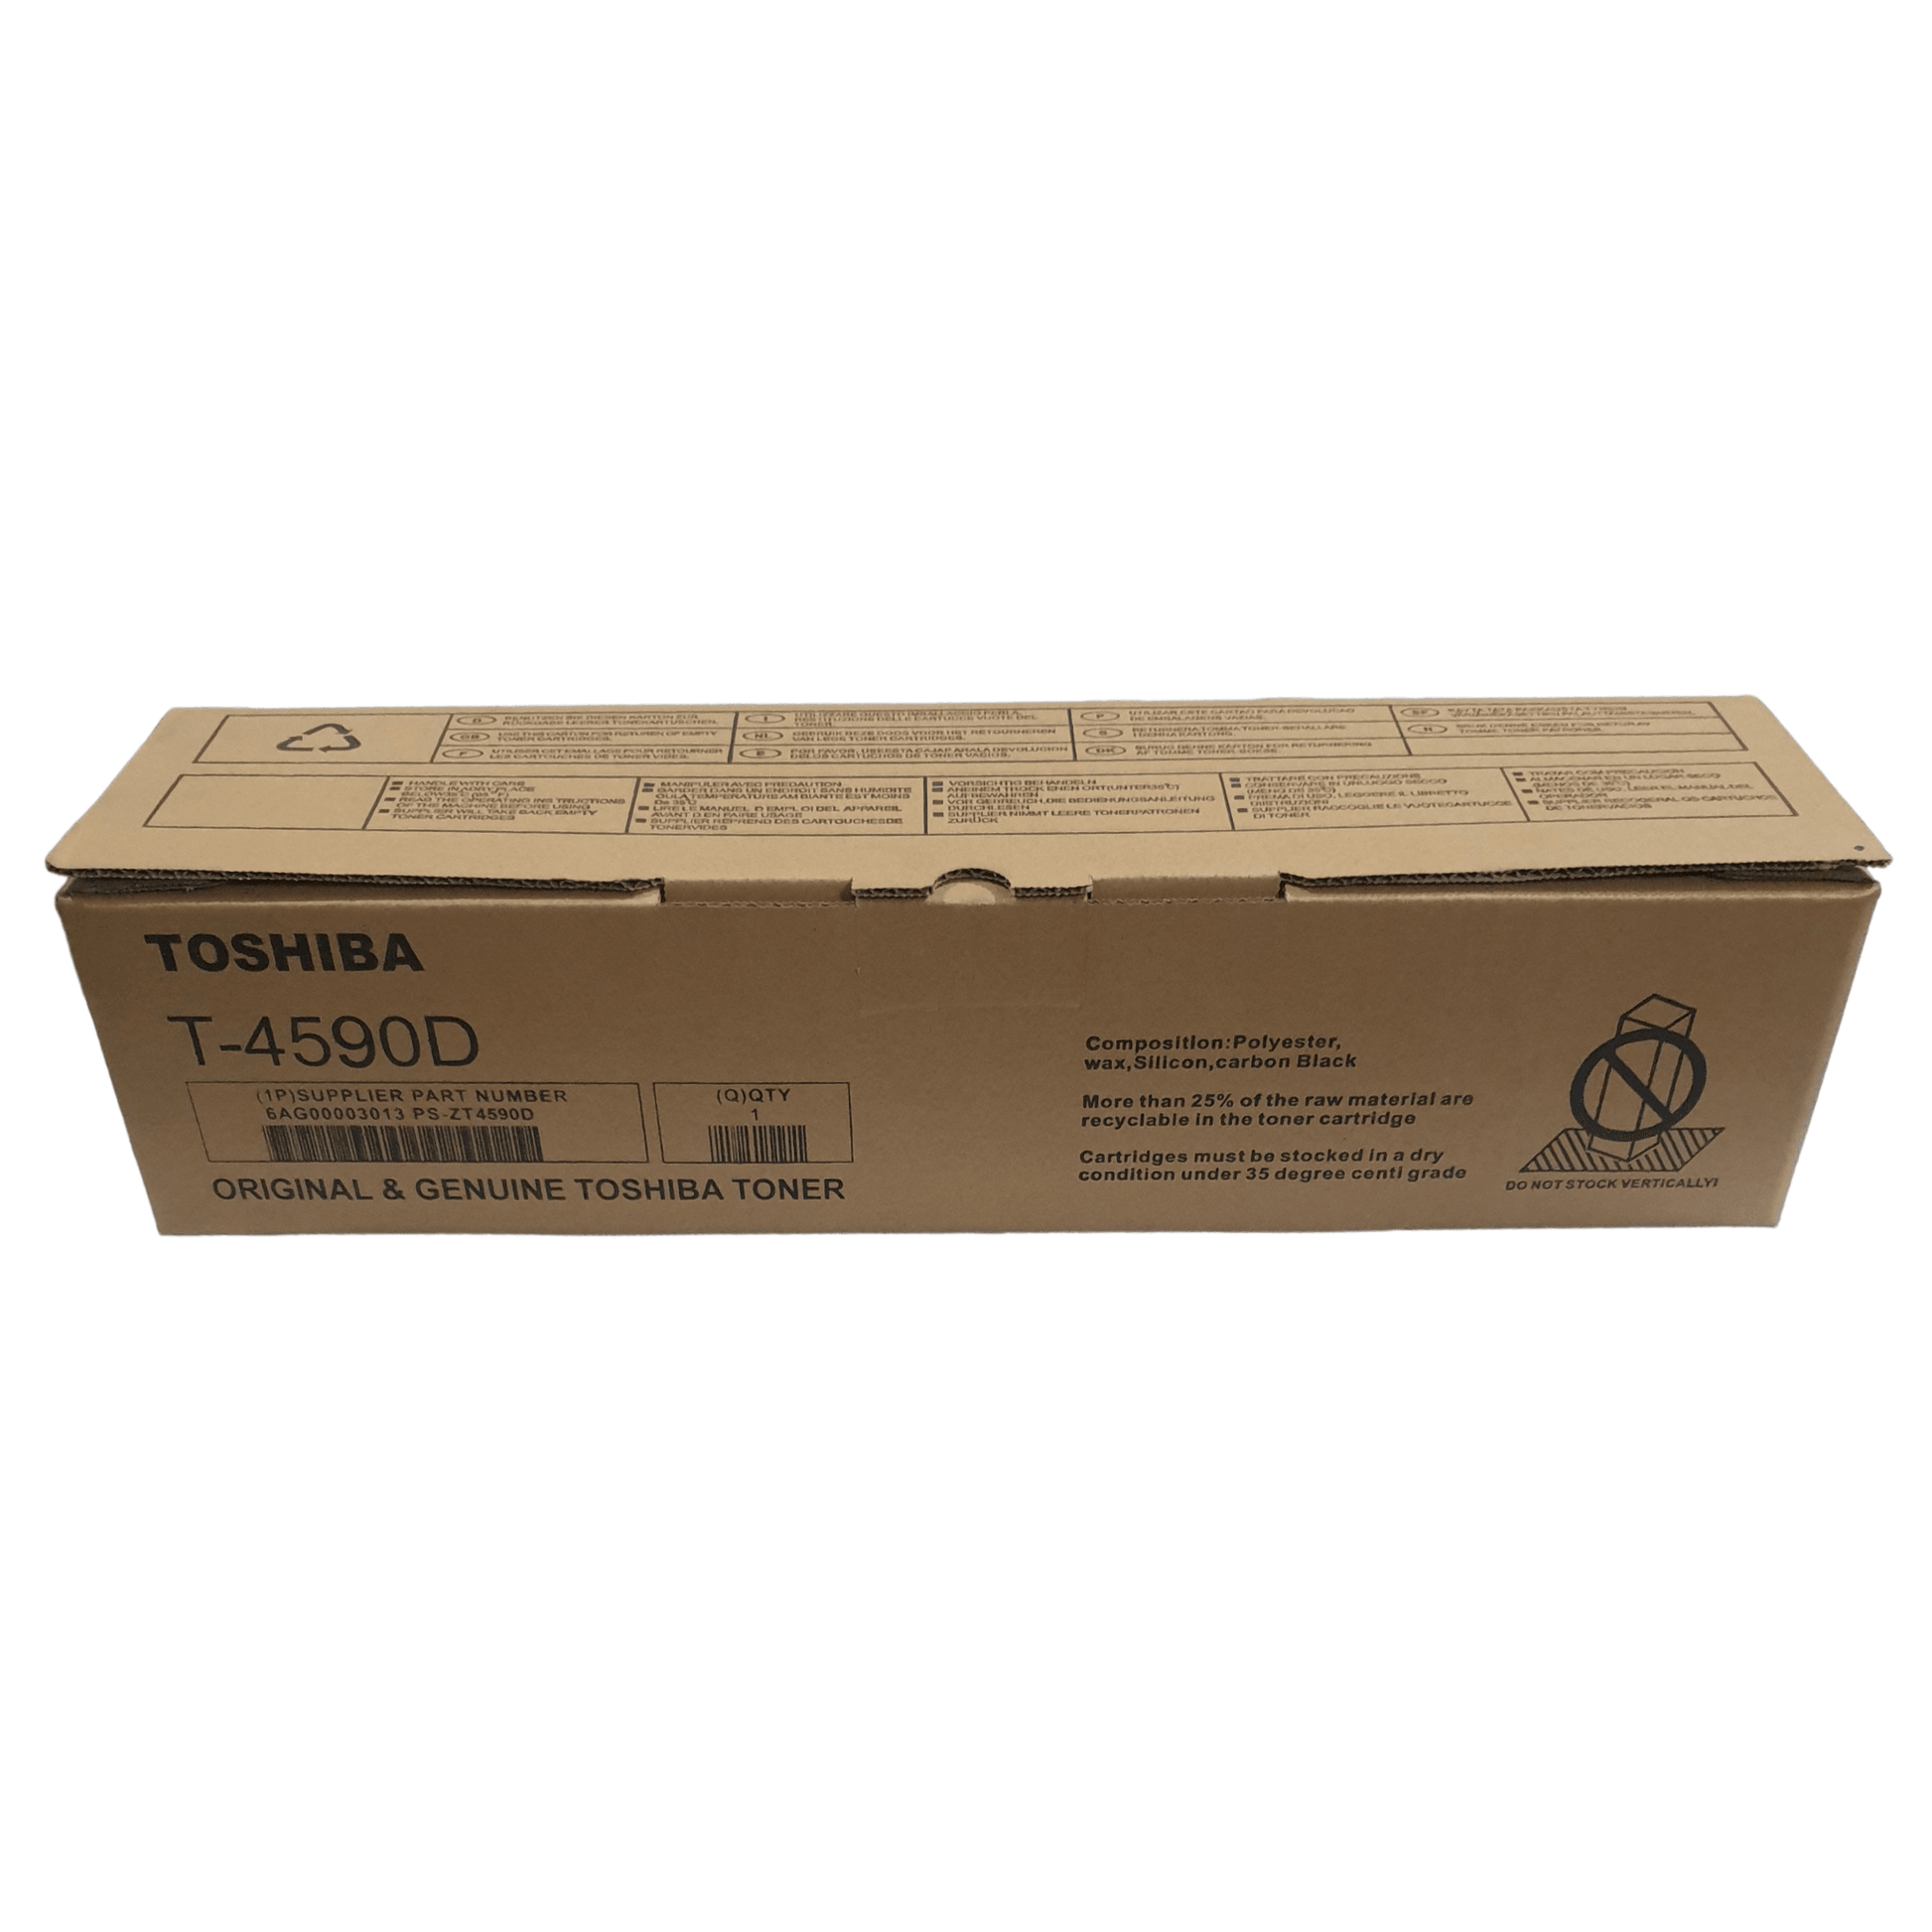 Toshiba Toner Cartridge T4590D - 𝐏𝐑𝐄𝐌𝐈𝐄𝐑 𝐓𝐑𝐀𝐃𝐄𝐑𝐒